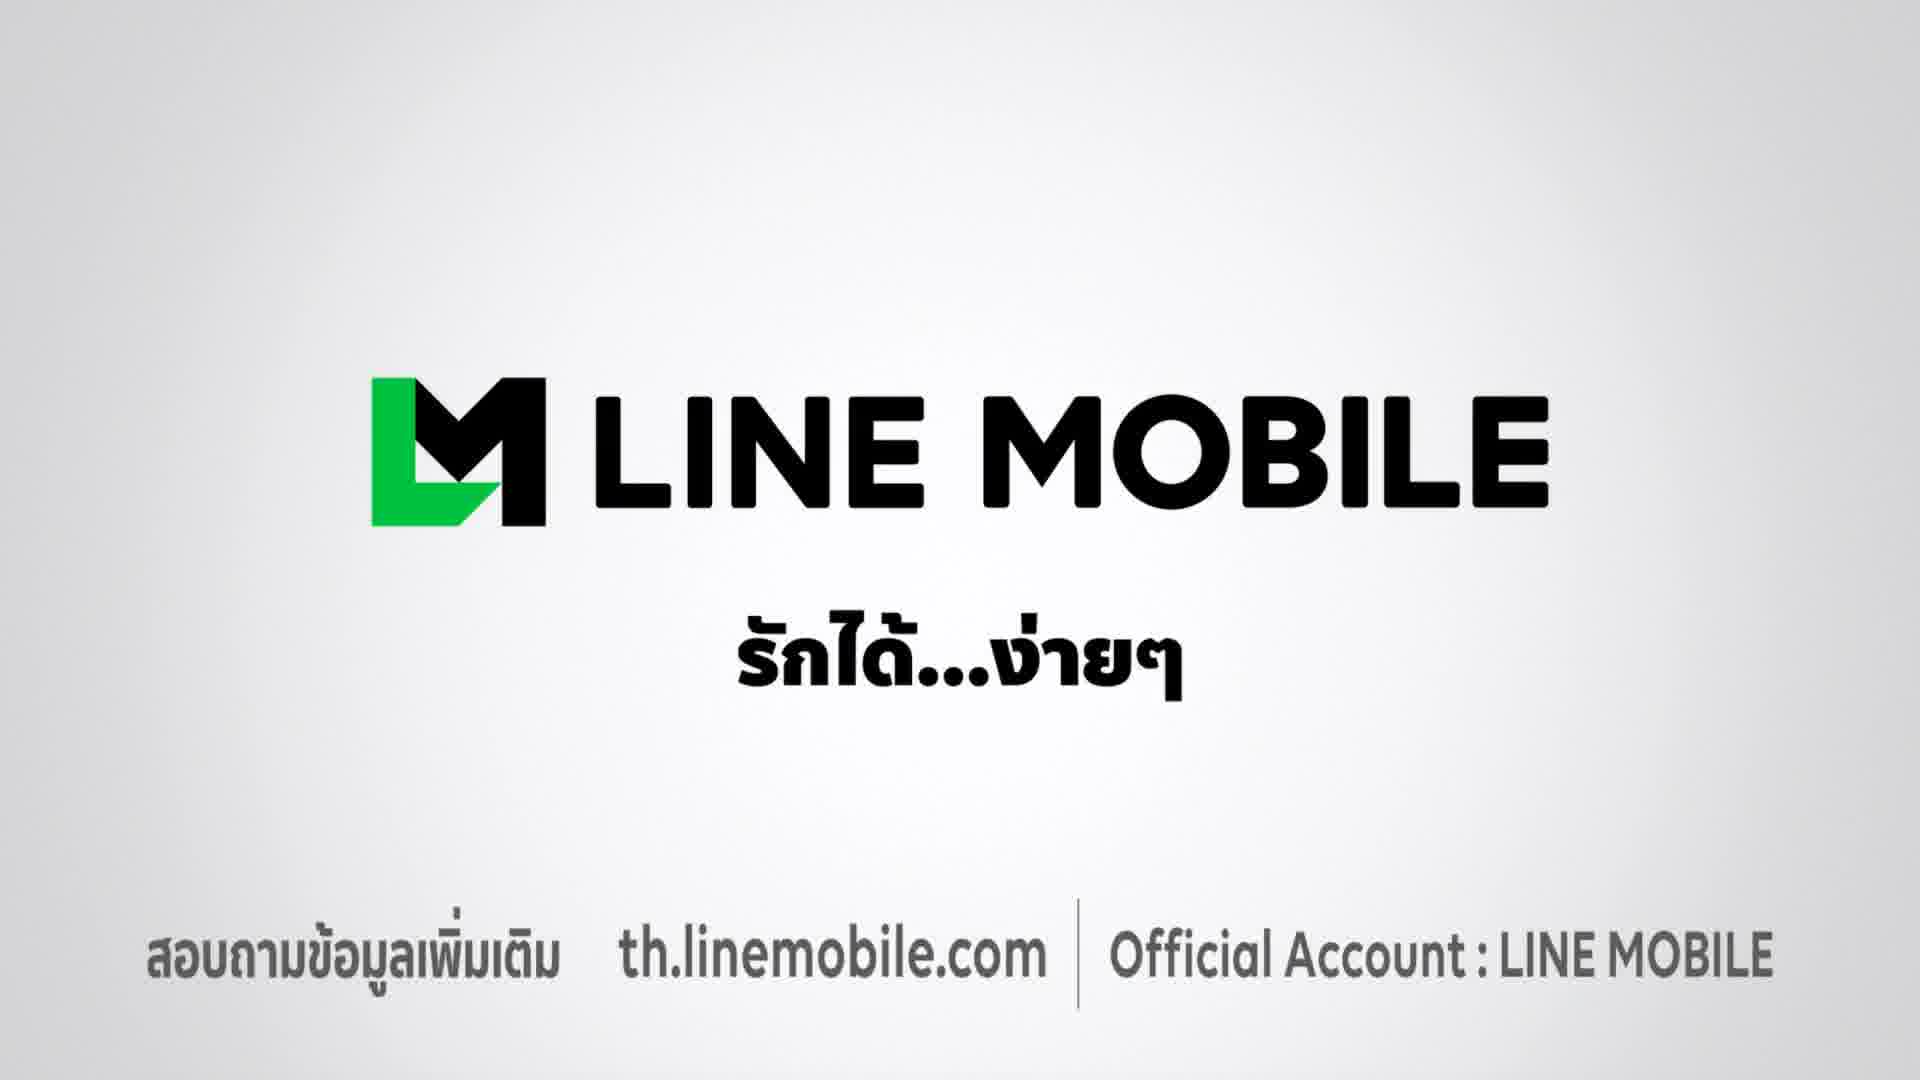 LINE_MOBILE No escape contract 30 sec